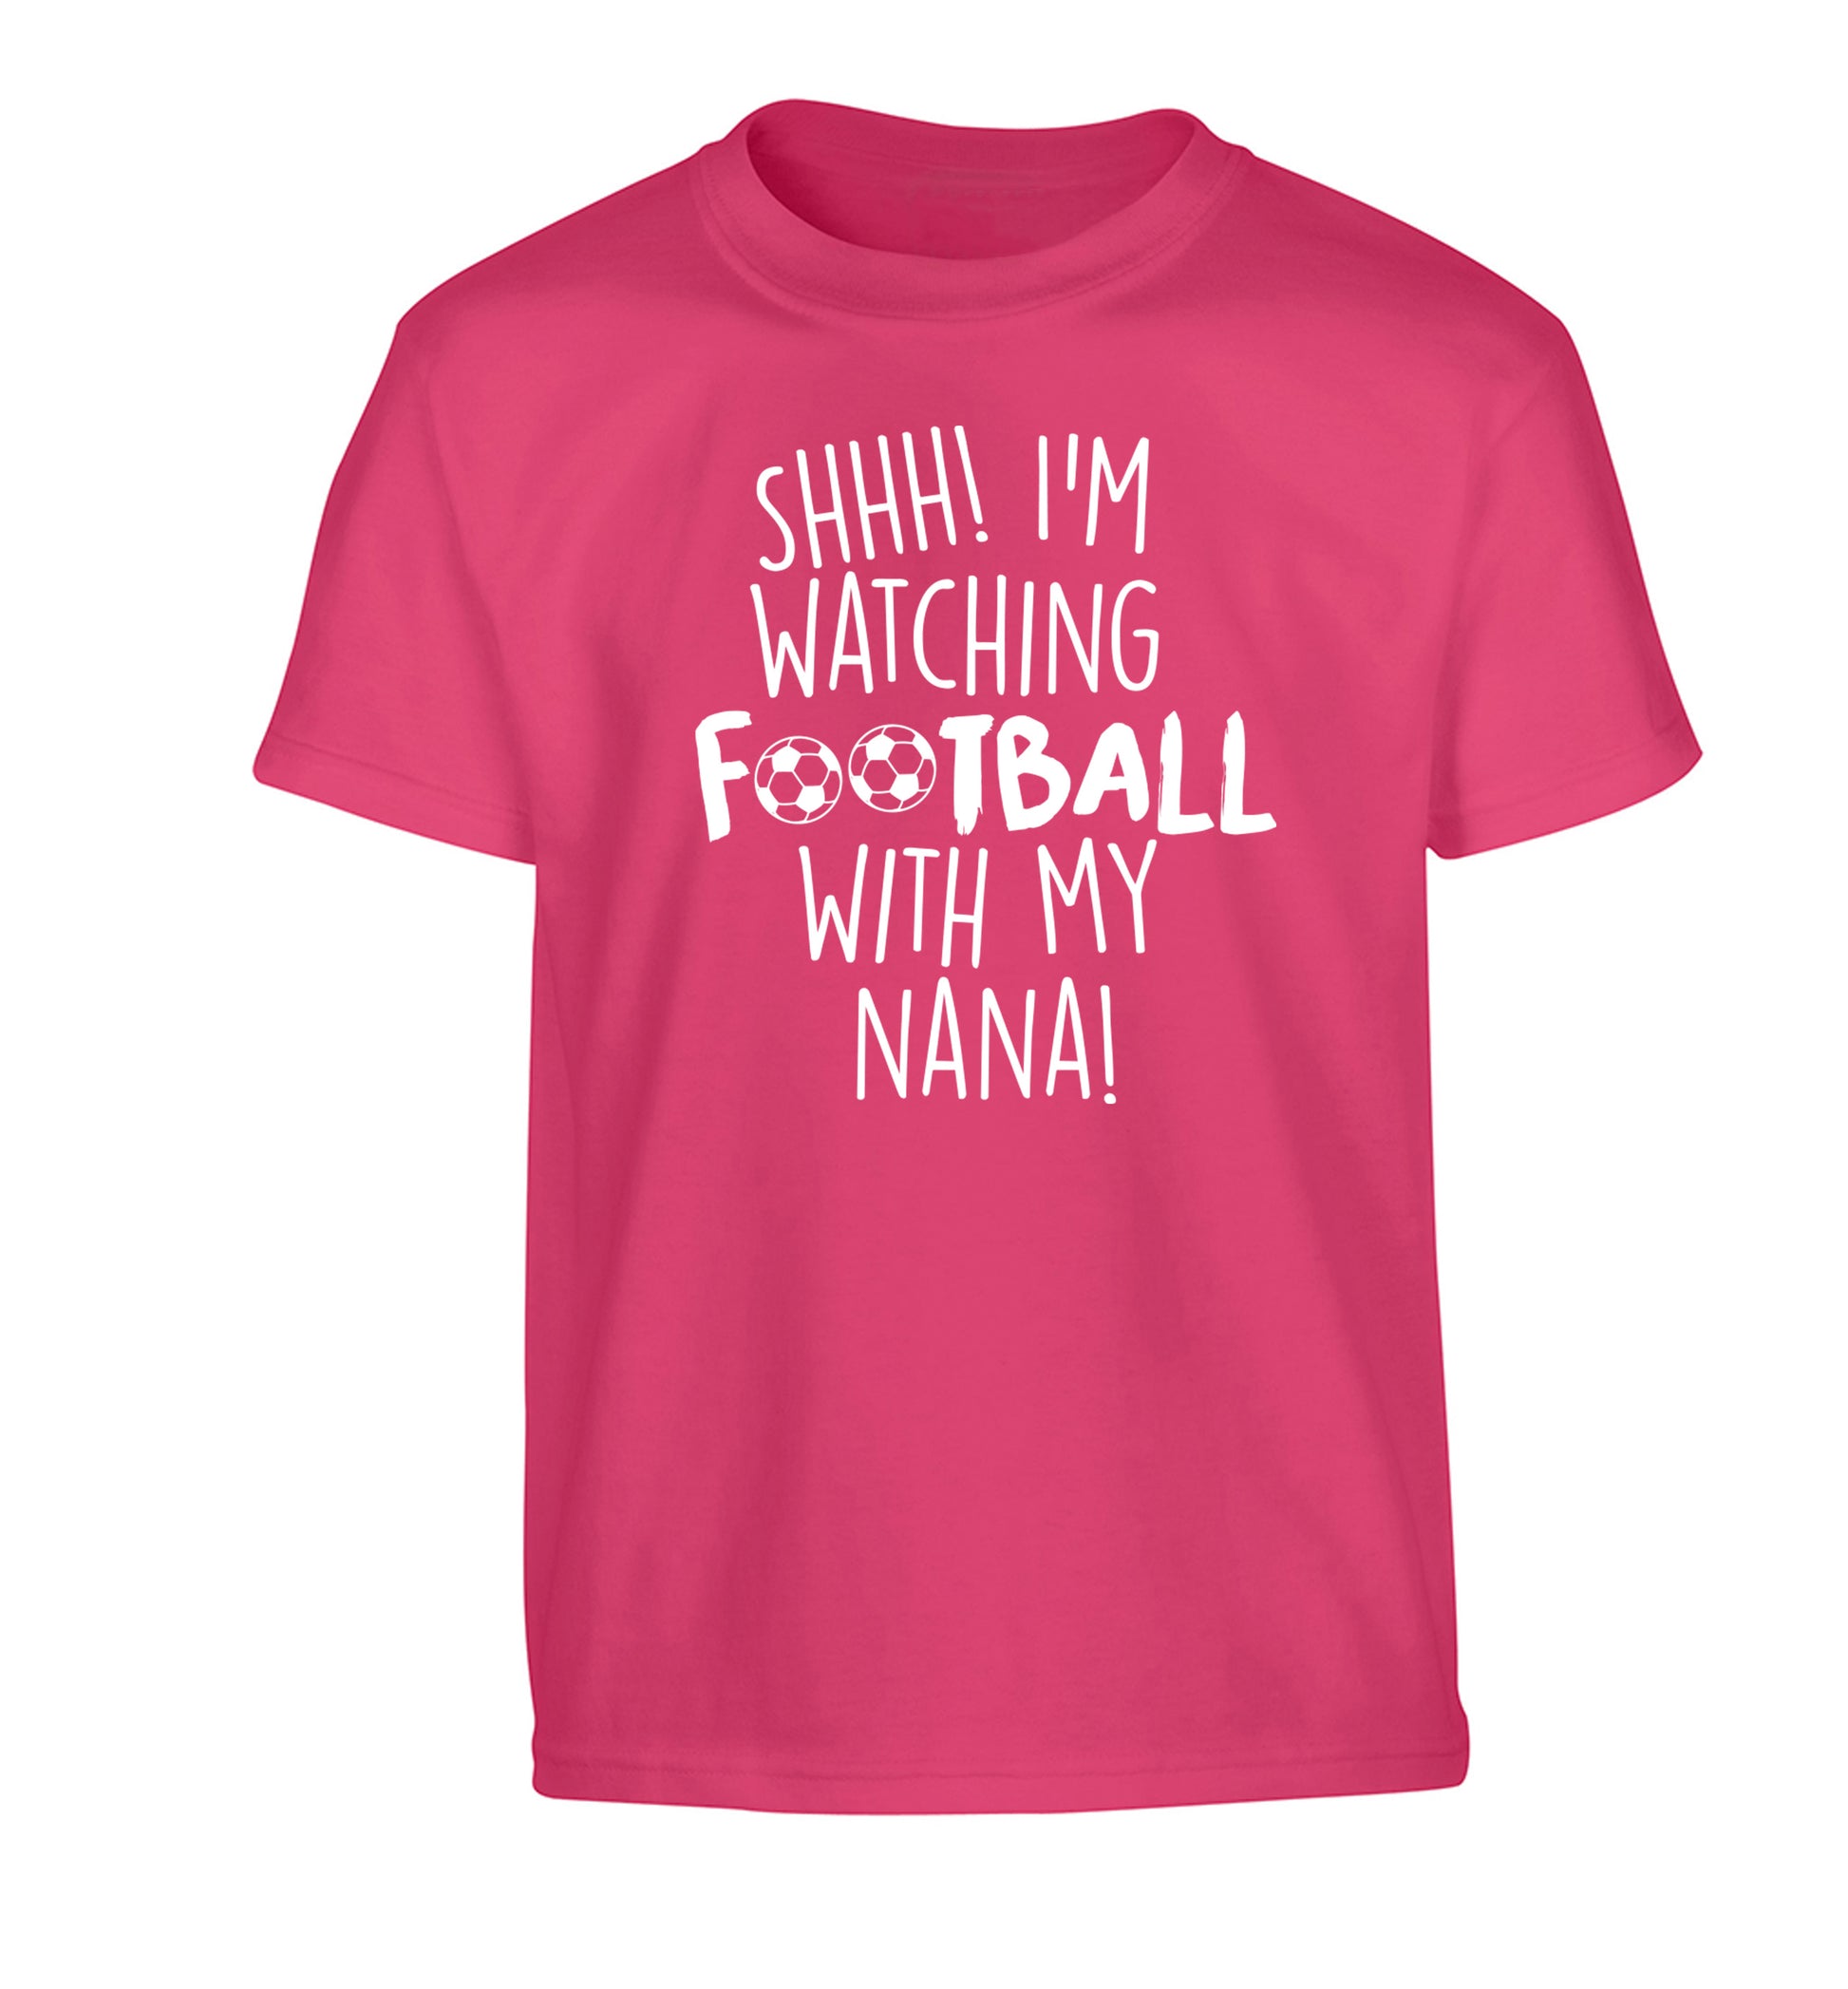 Shhh I'm watching football with my nana Children's pink Tshirt 12-14 Years